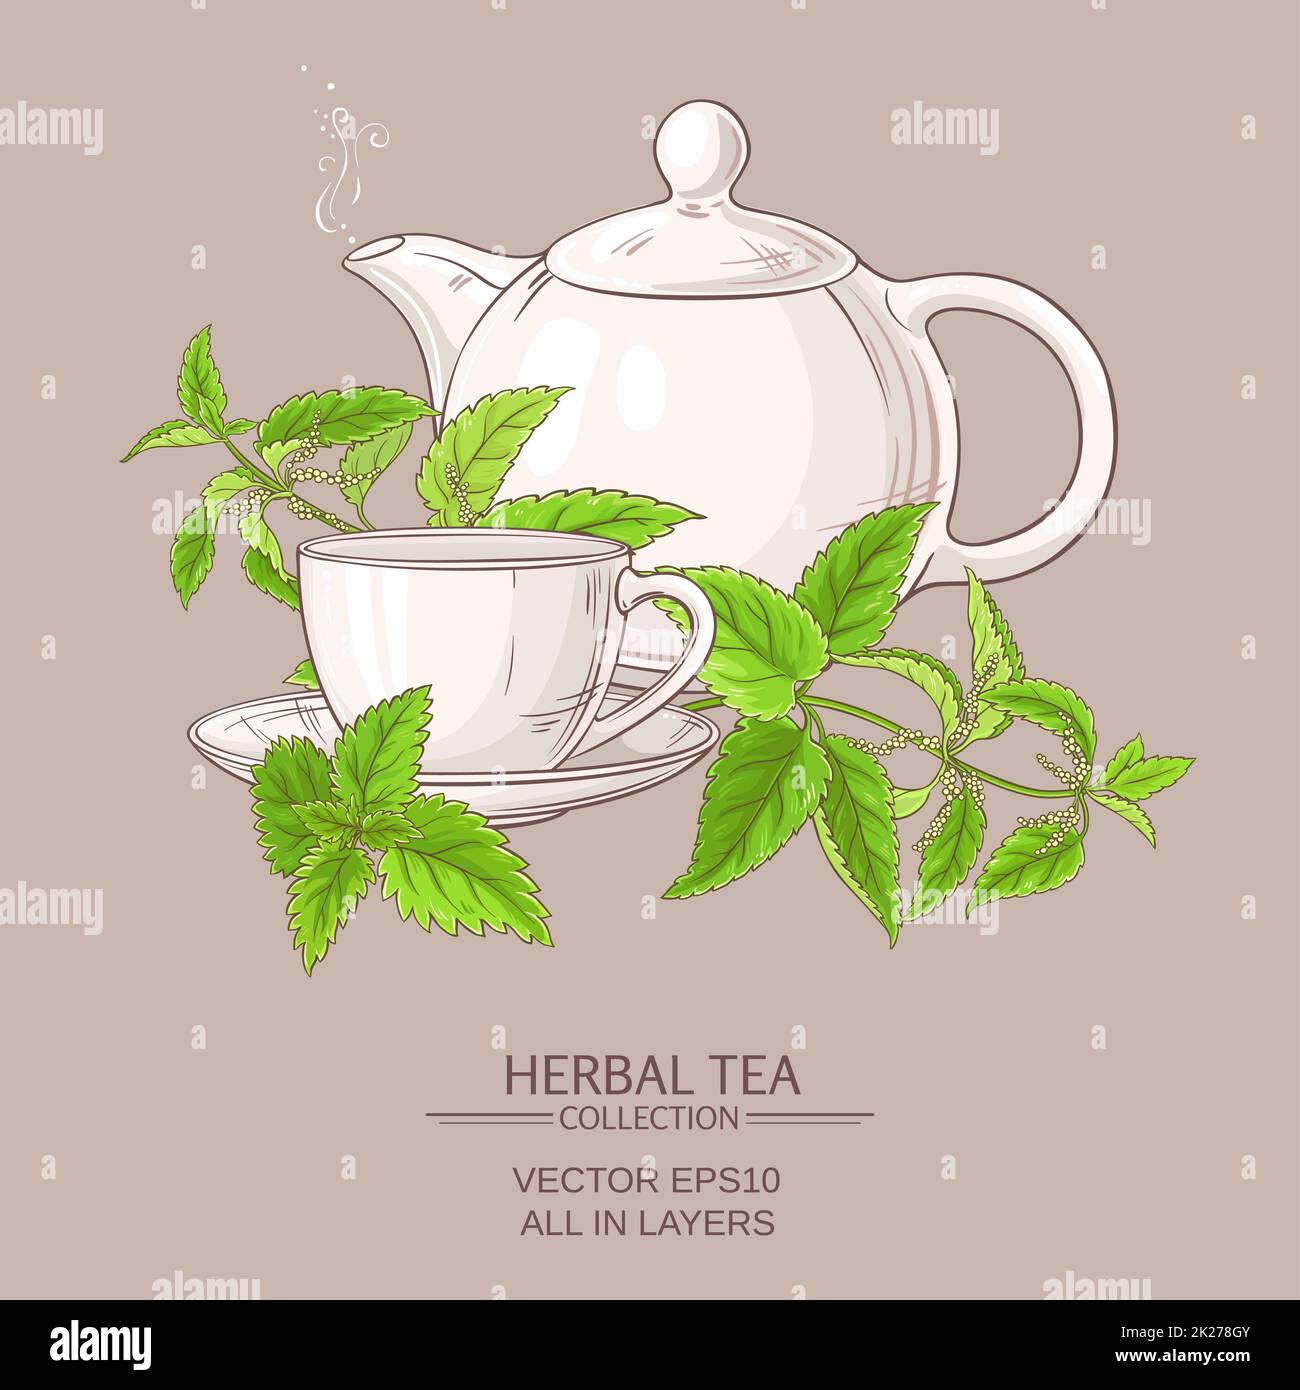 nettle tea illustration Stock Photo